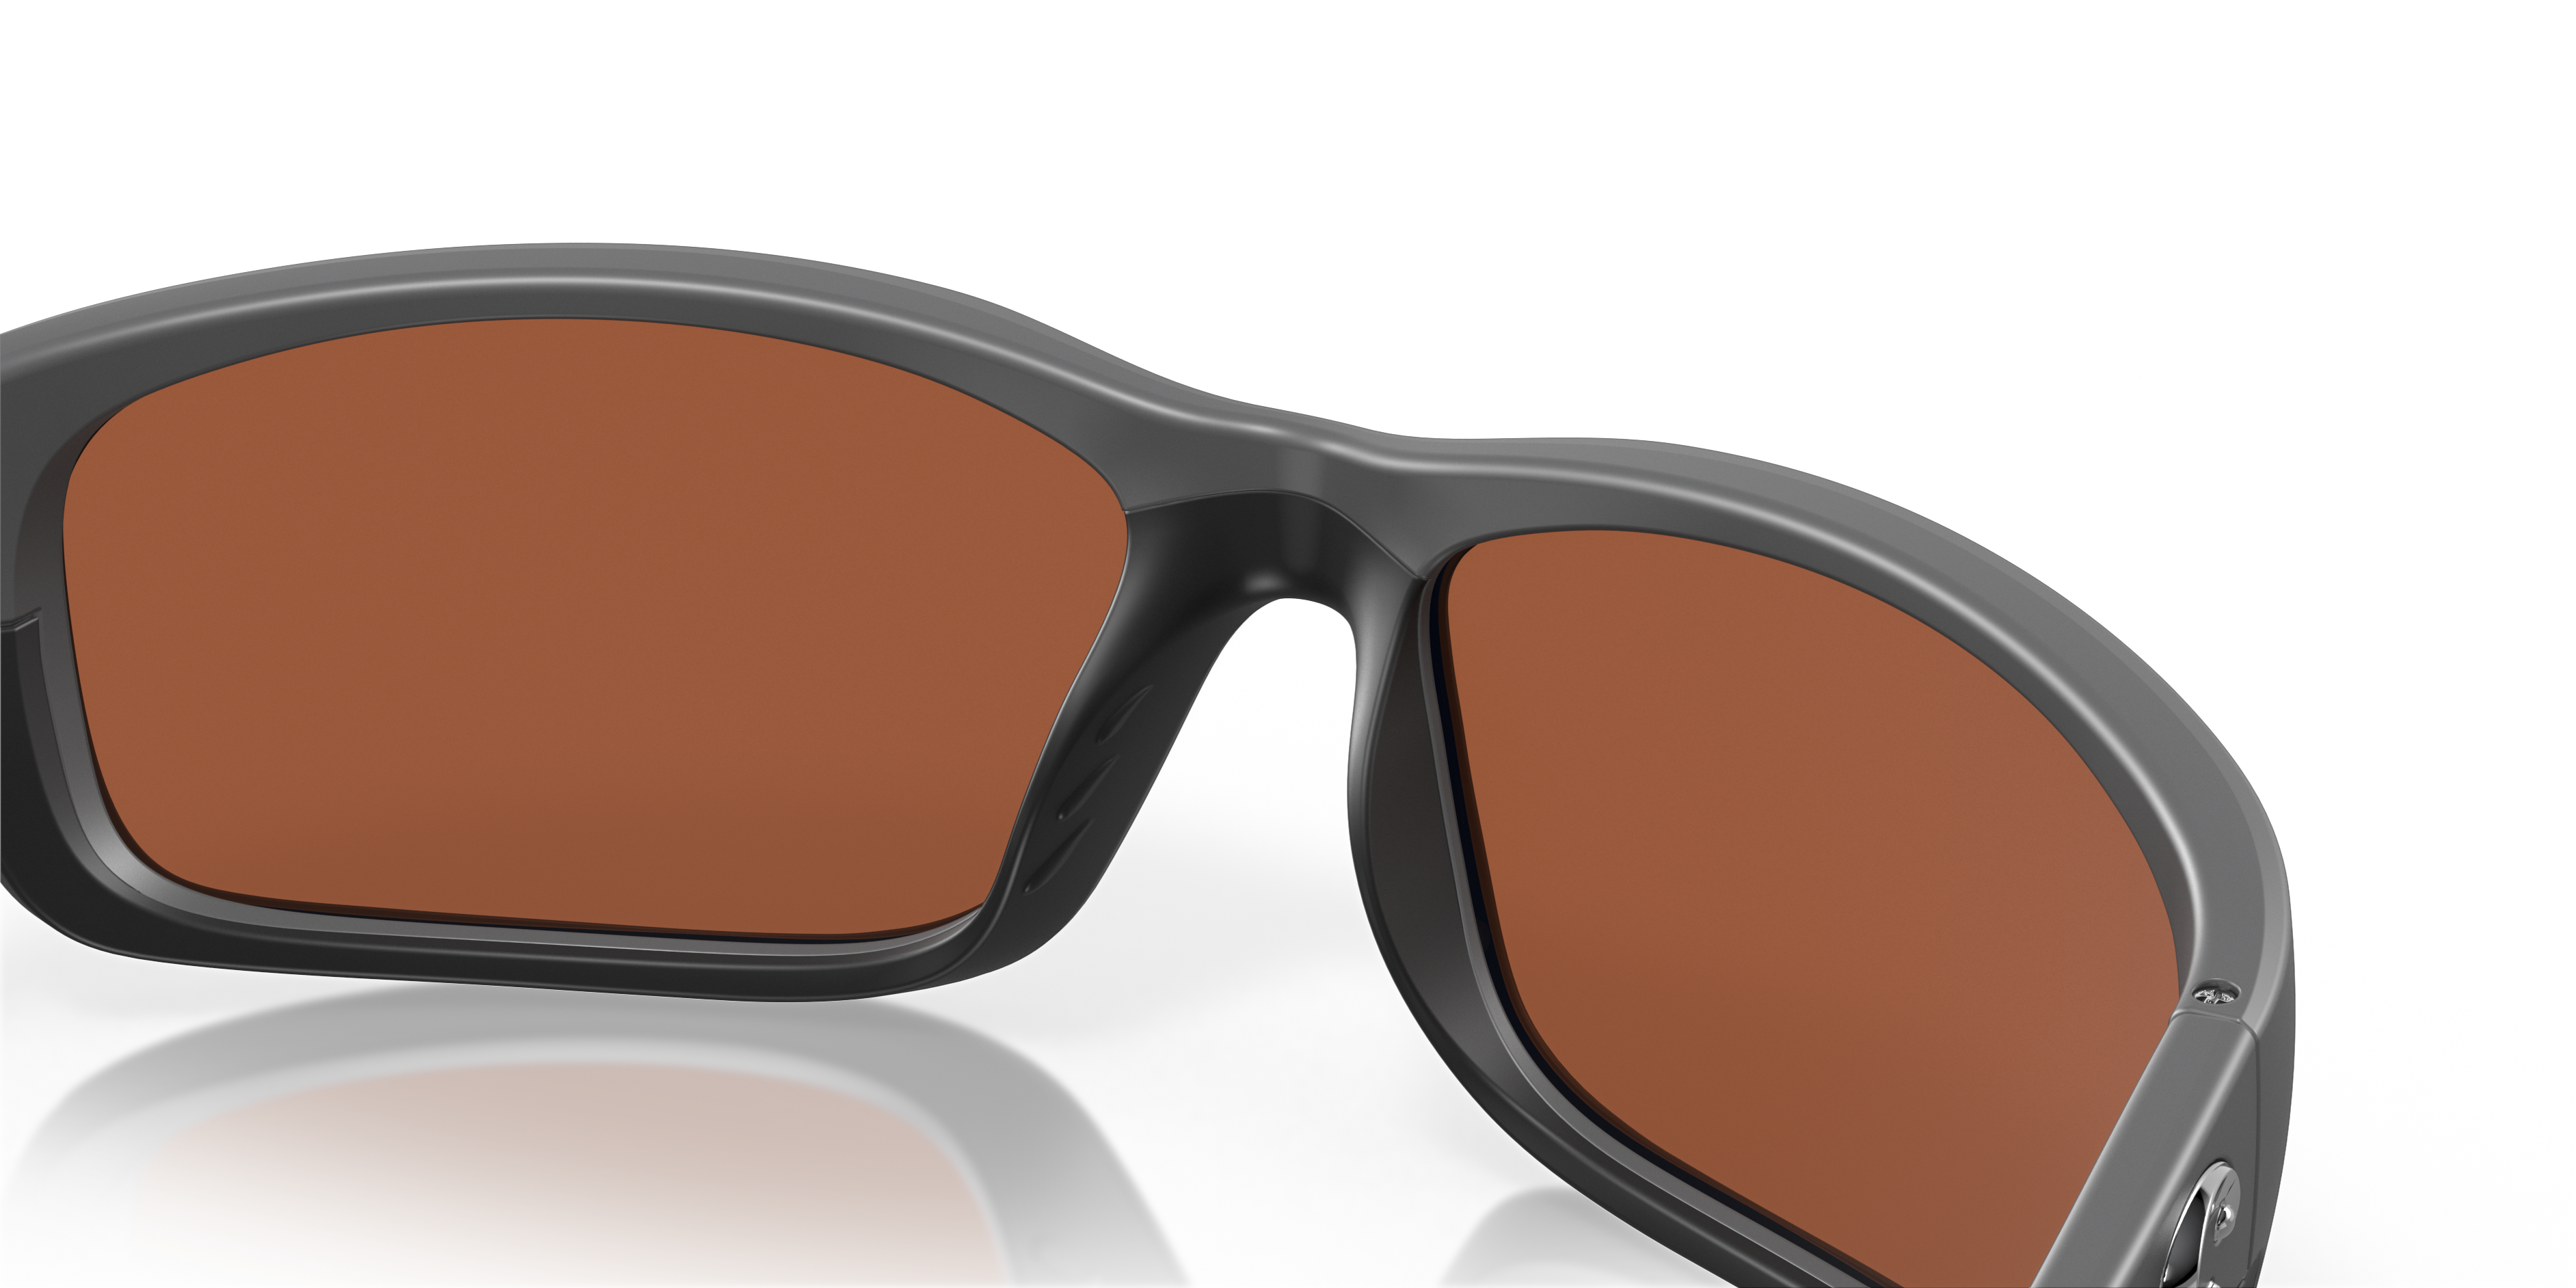 New Costa Del Mar Jose Polarized Sunglasses 580P Matte Gray/Copper Fishing